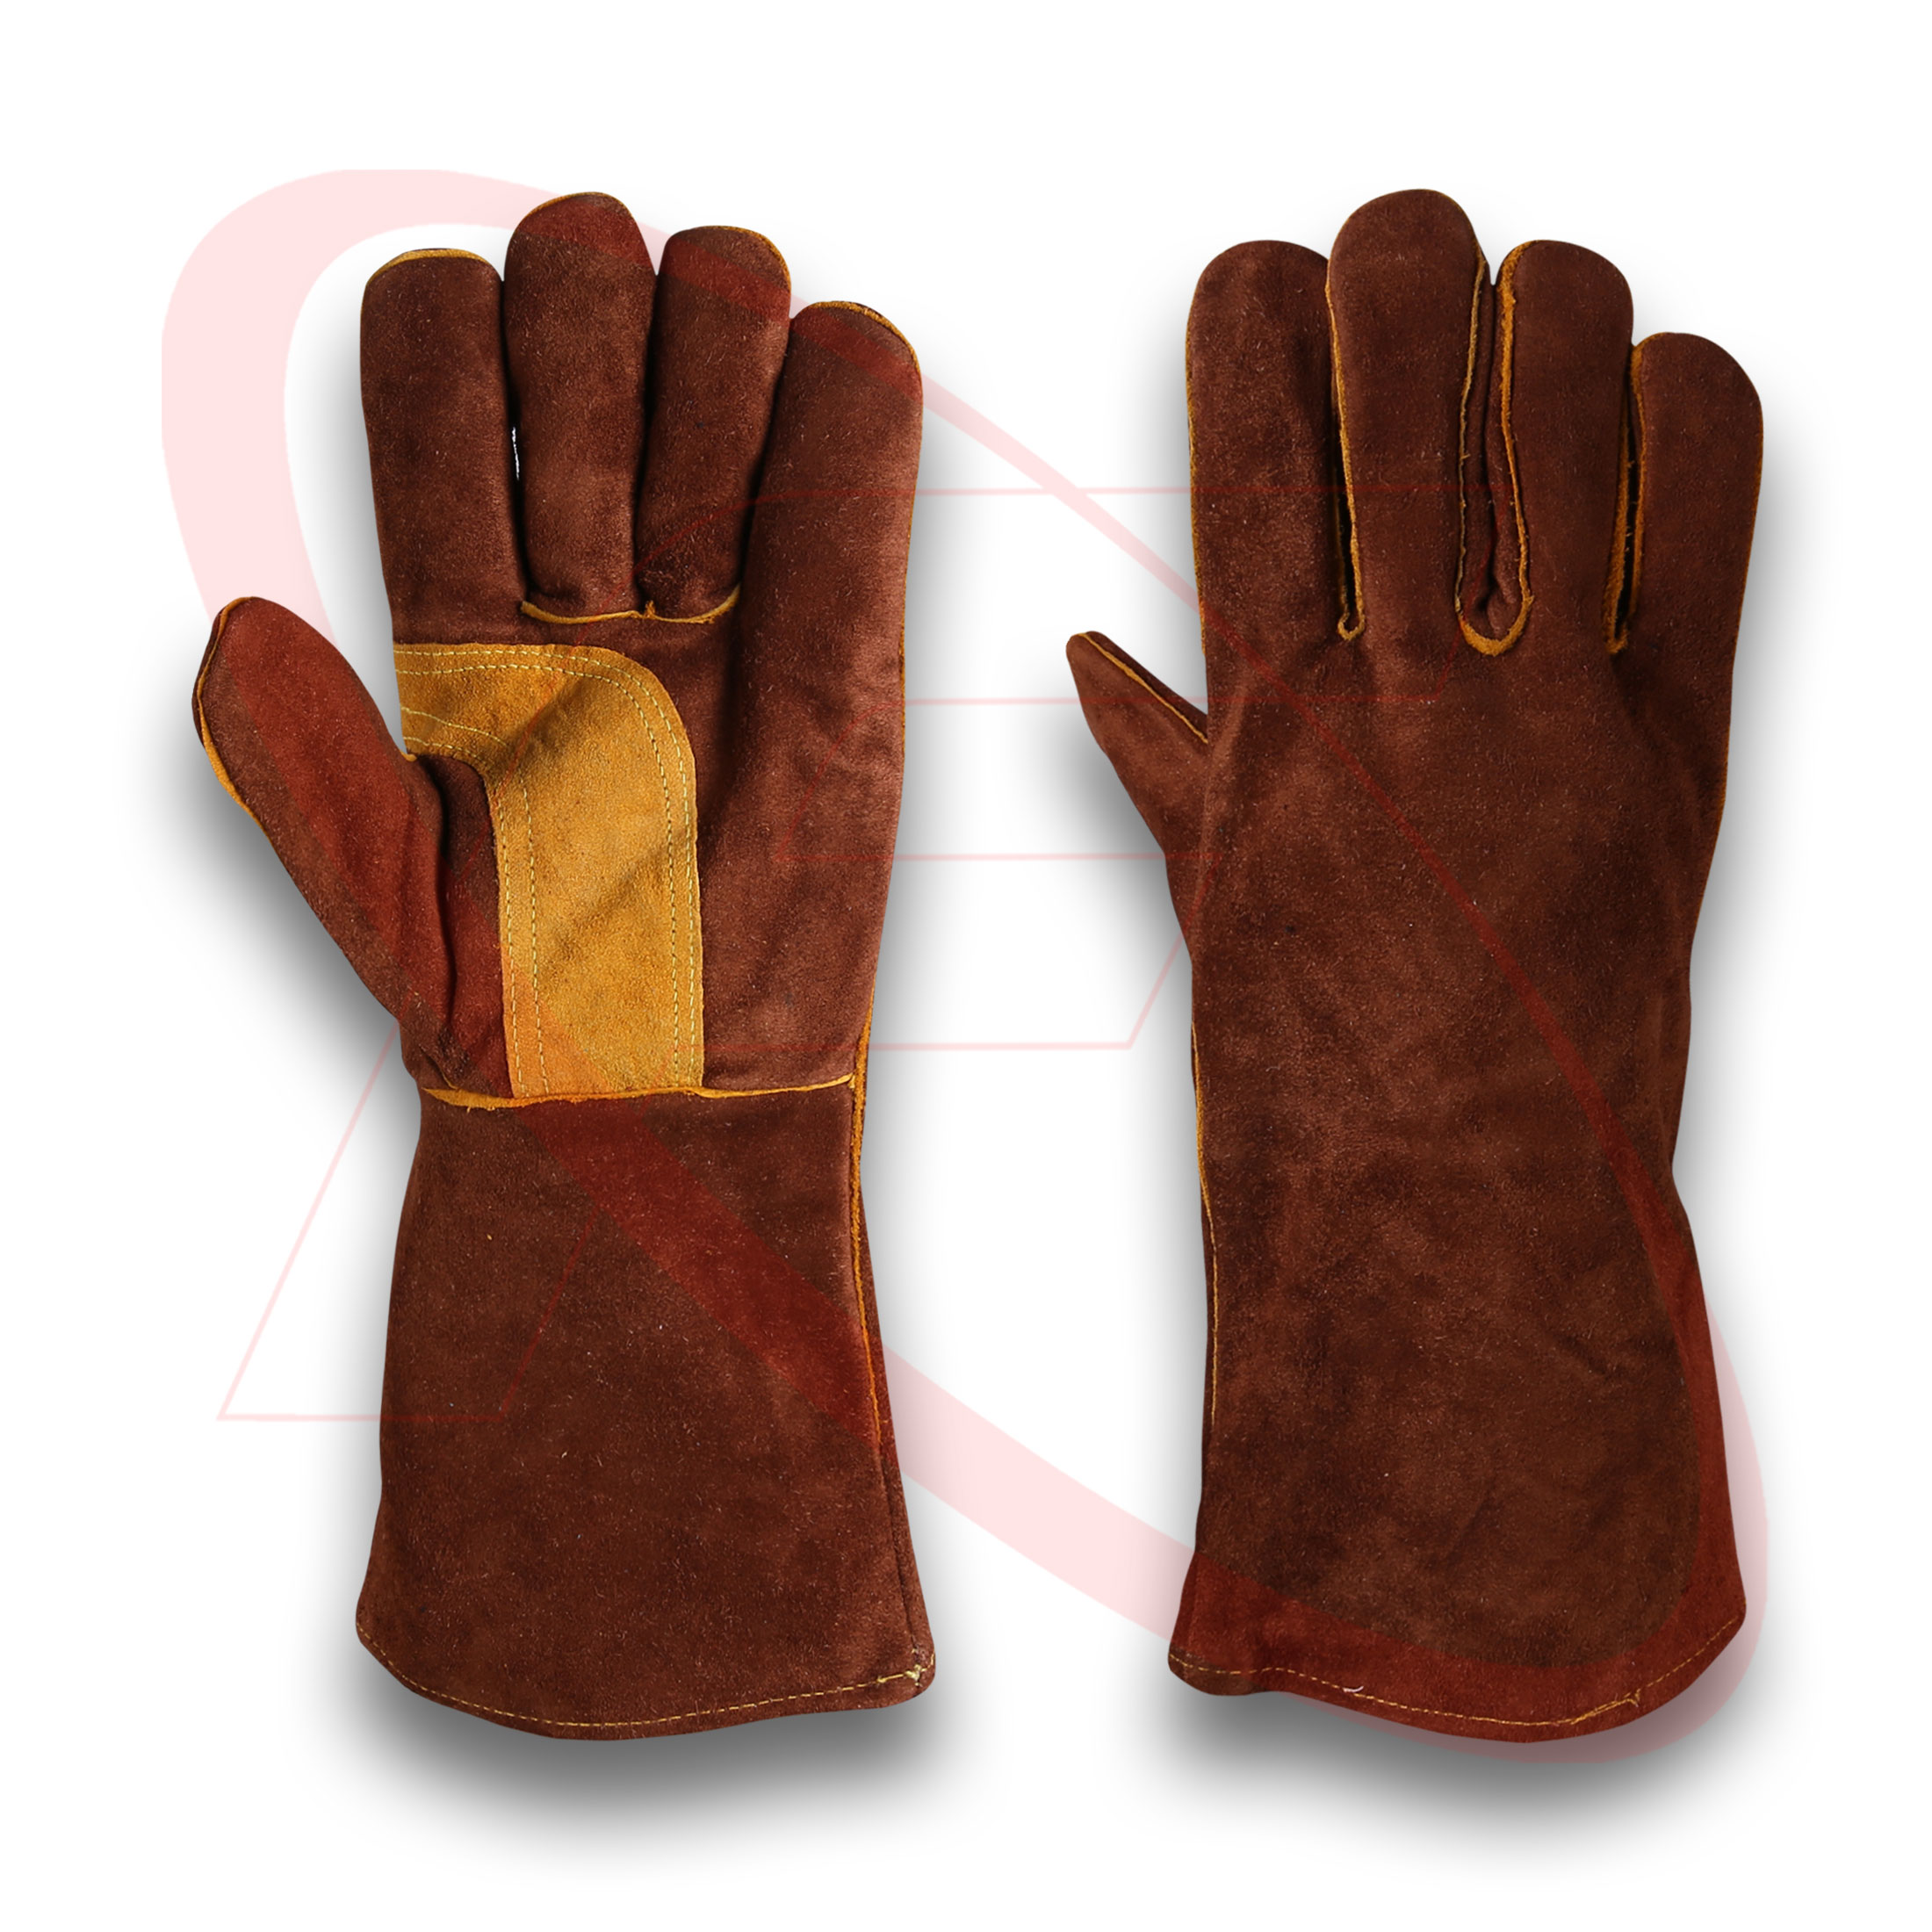 Welding Gloves For Welders in Cowhide Split Leather Stick Welder Working Gloves Mig Welder Gloves